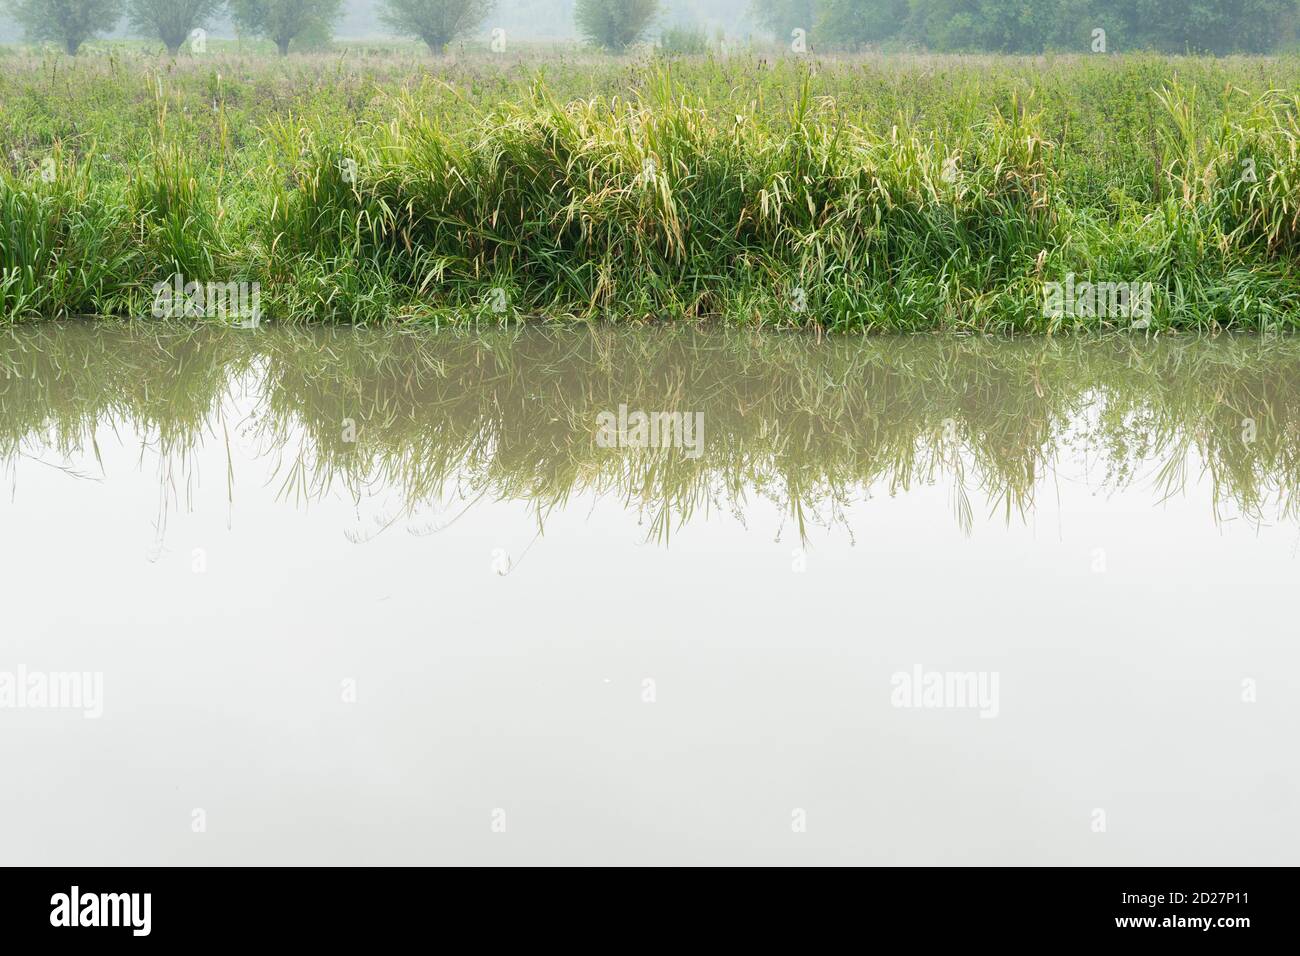 eau trouble au bord de la rivière avec de l'herbe verte luxuriante et longue roseau avec espace de copie Banque D'Images